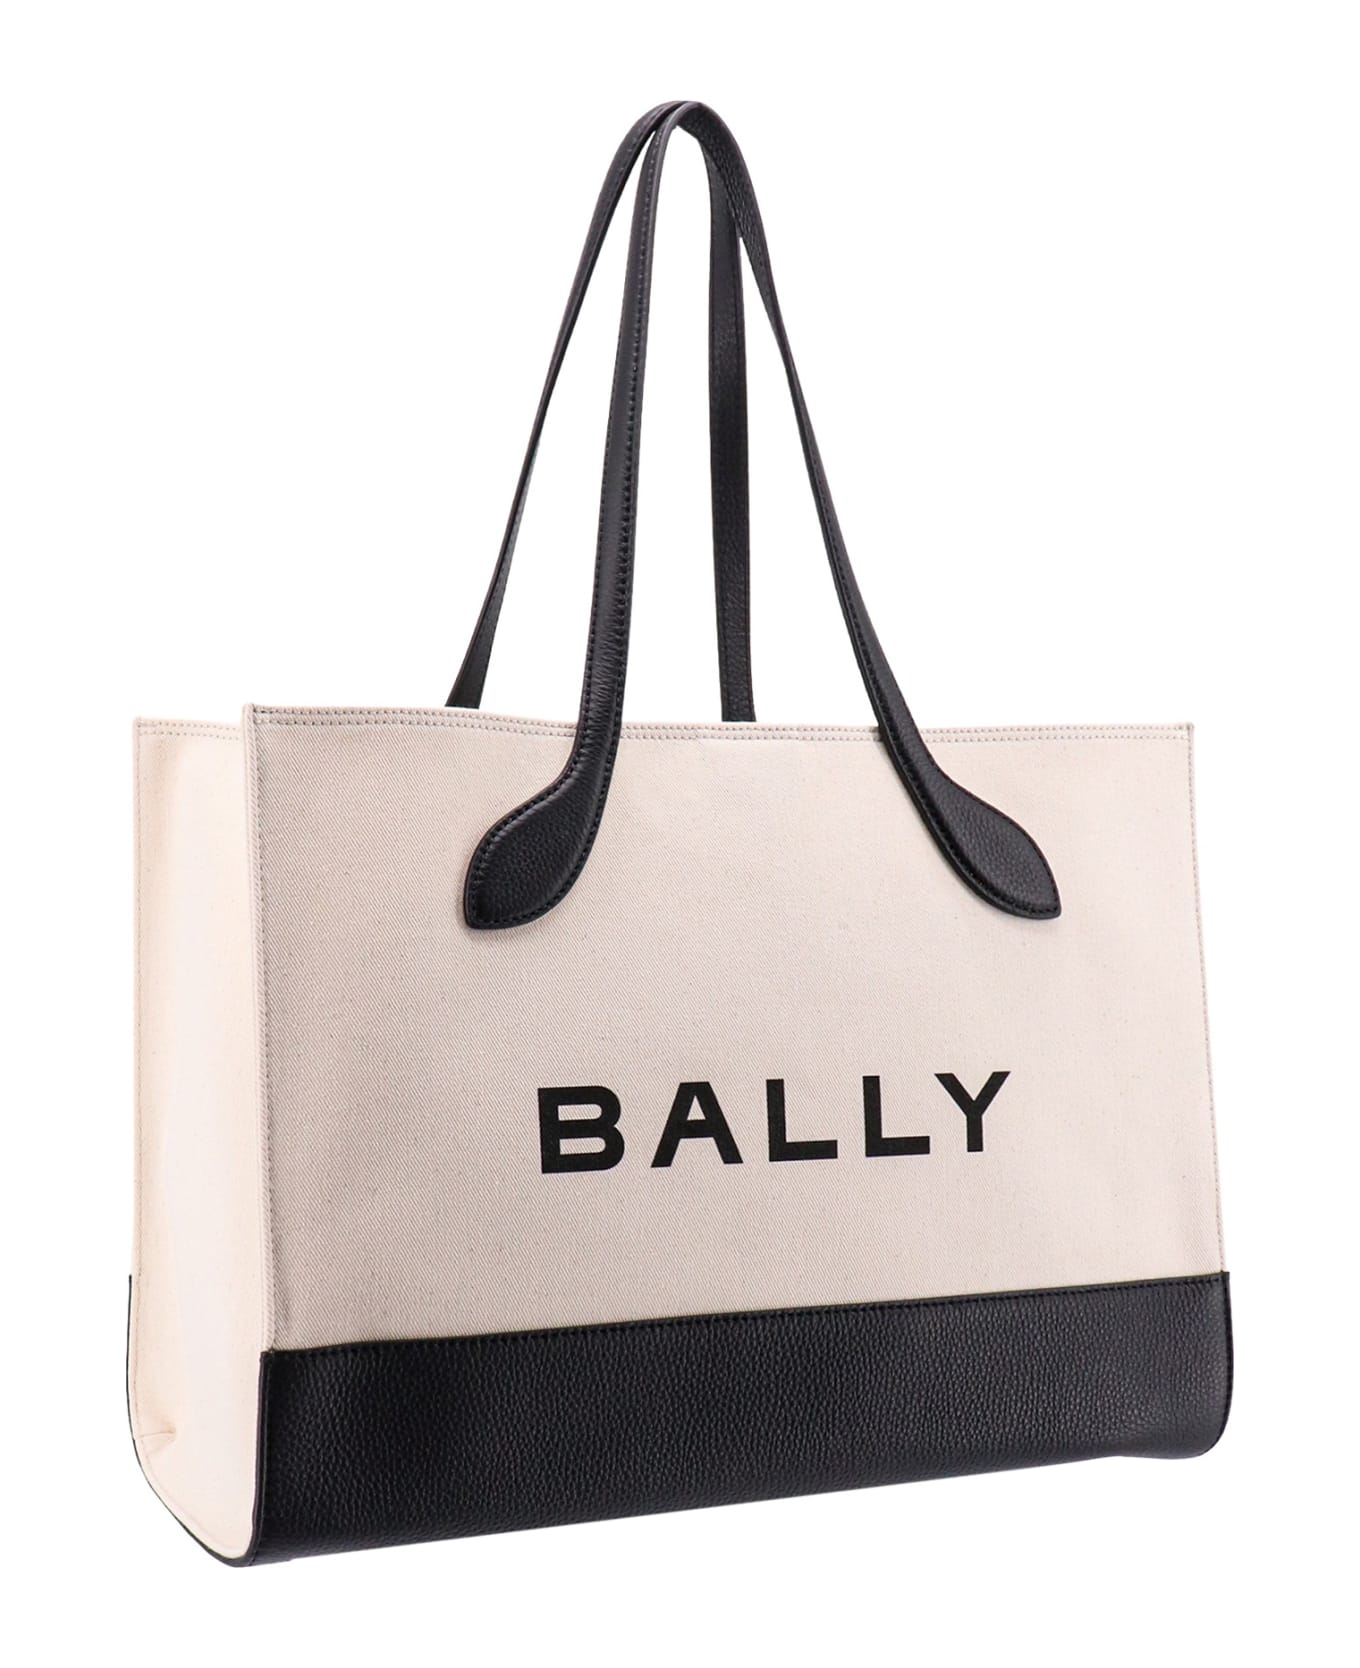 Bally Shoulder Bag - Natural